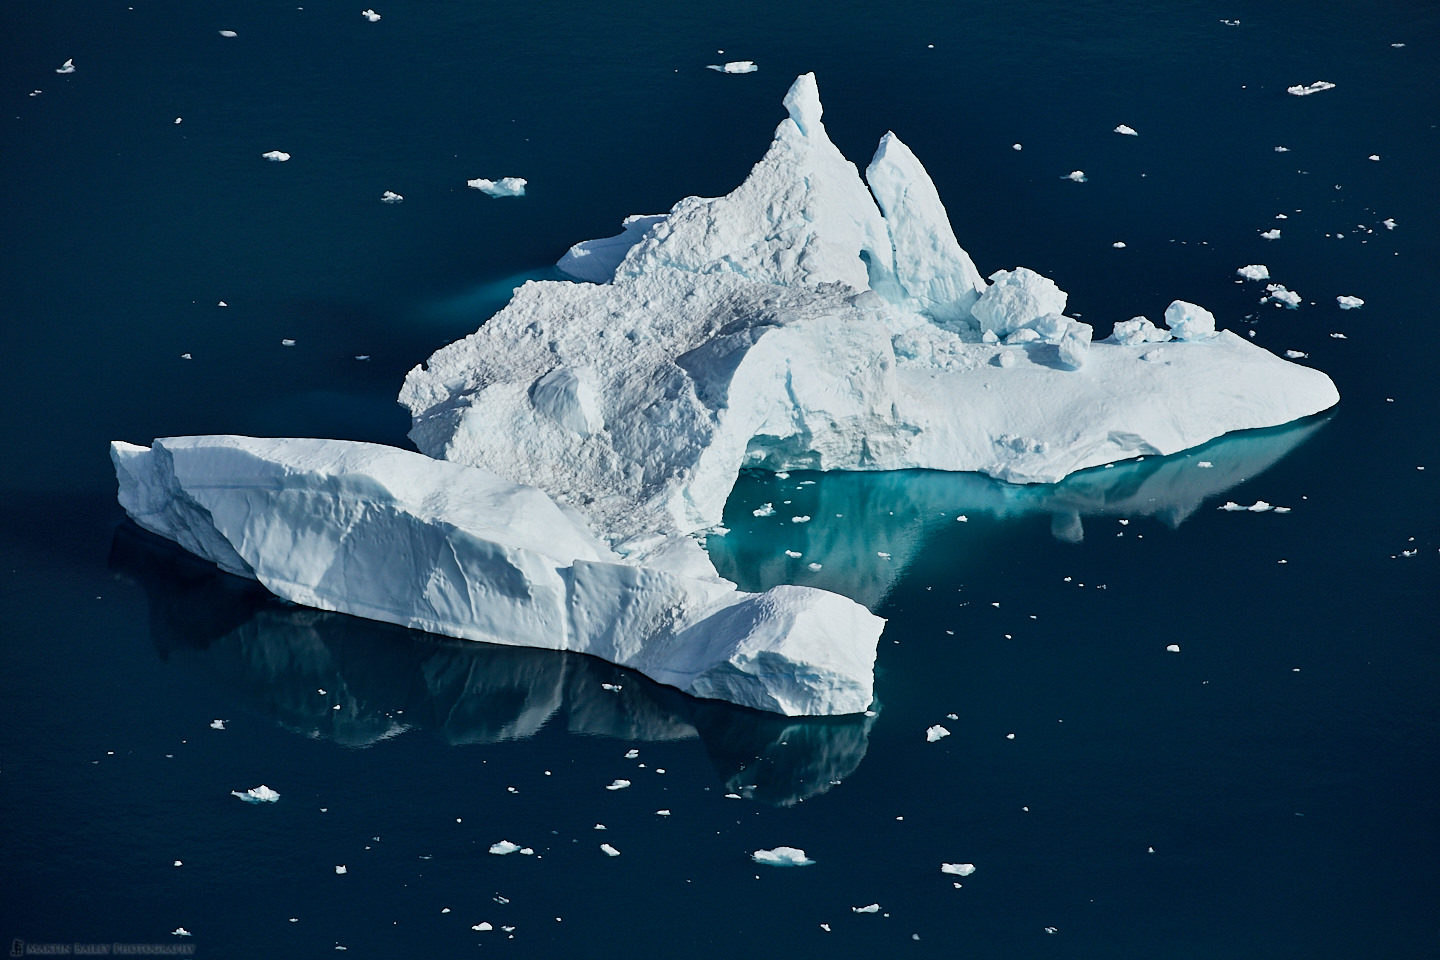 Iceberg Base and Reflection